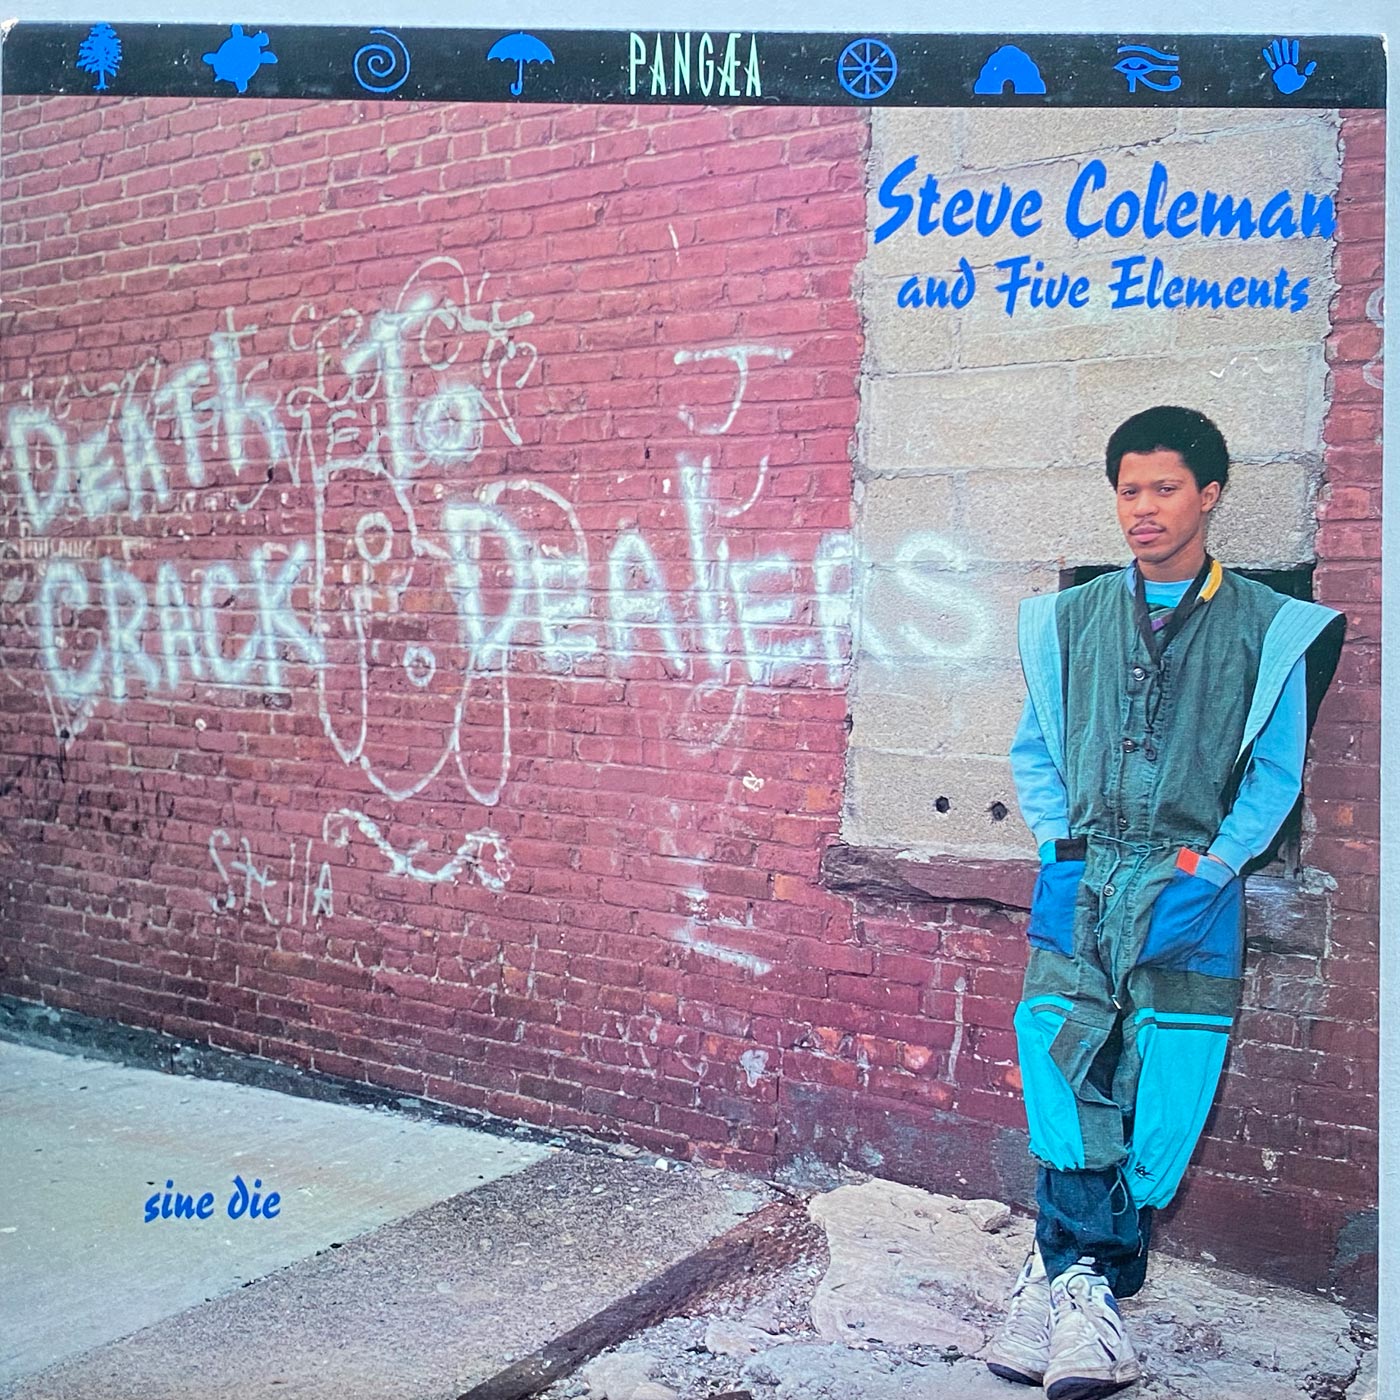 Steve Coleman and Five Elements - sine die